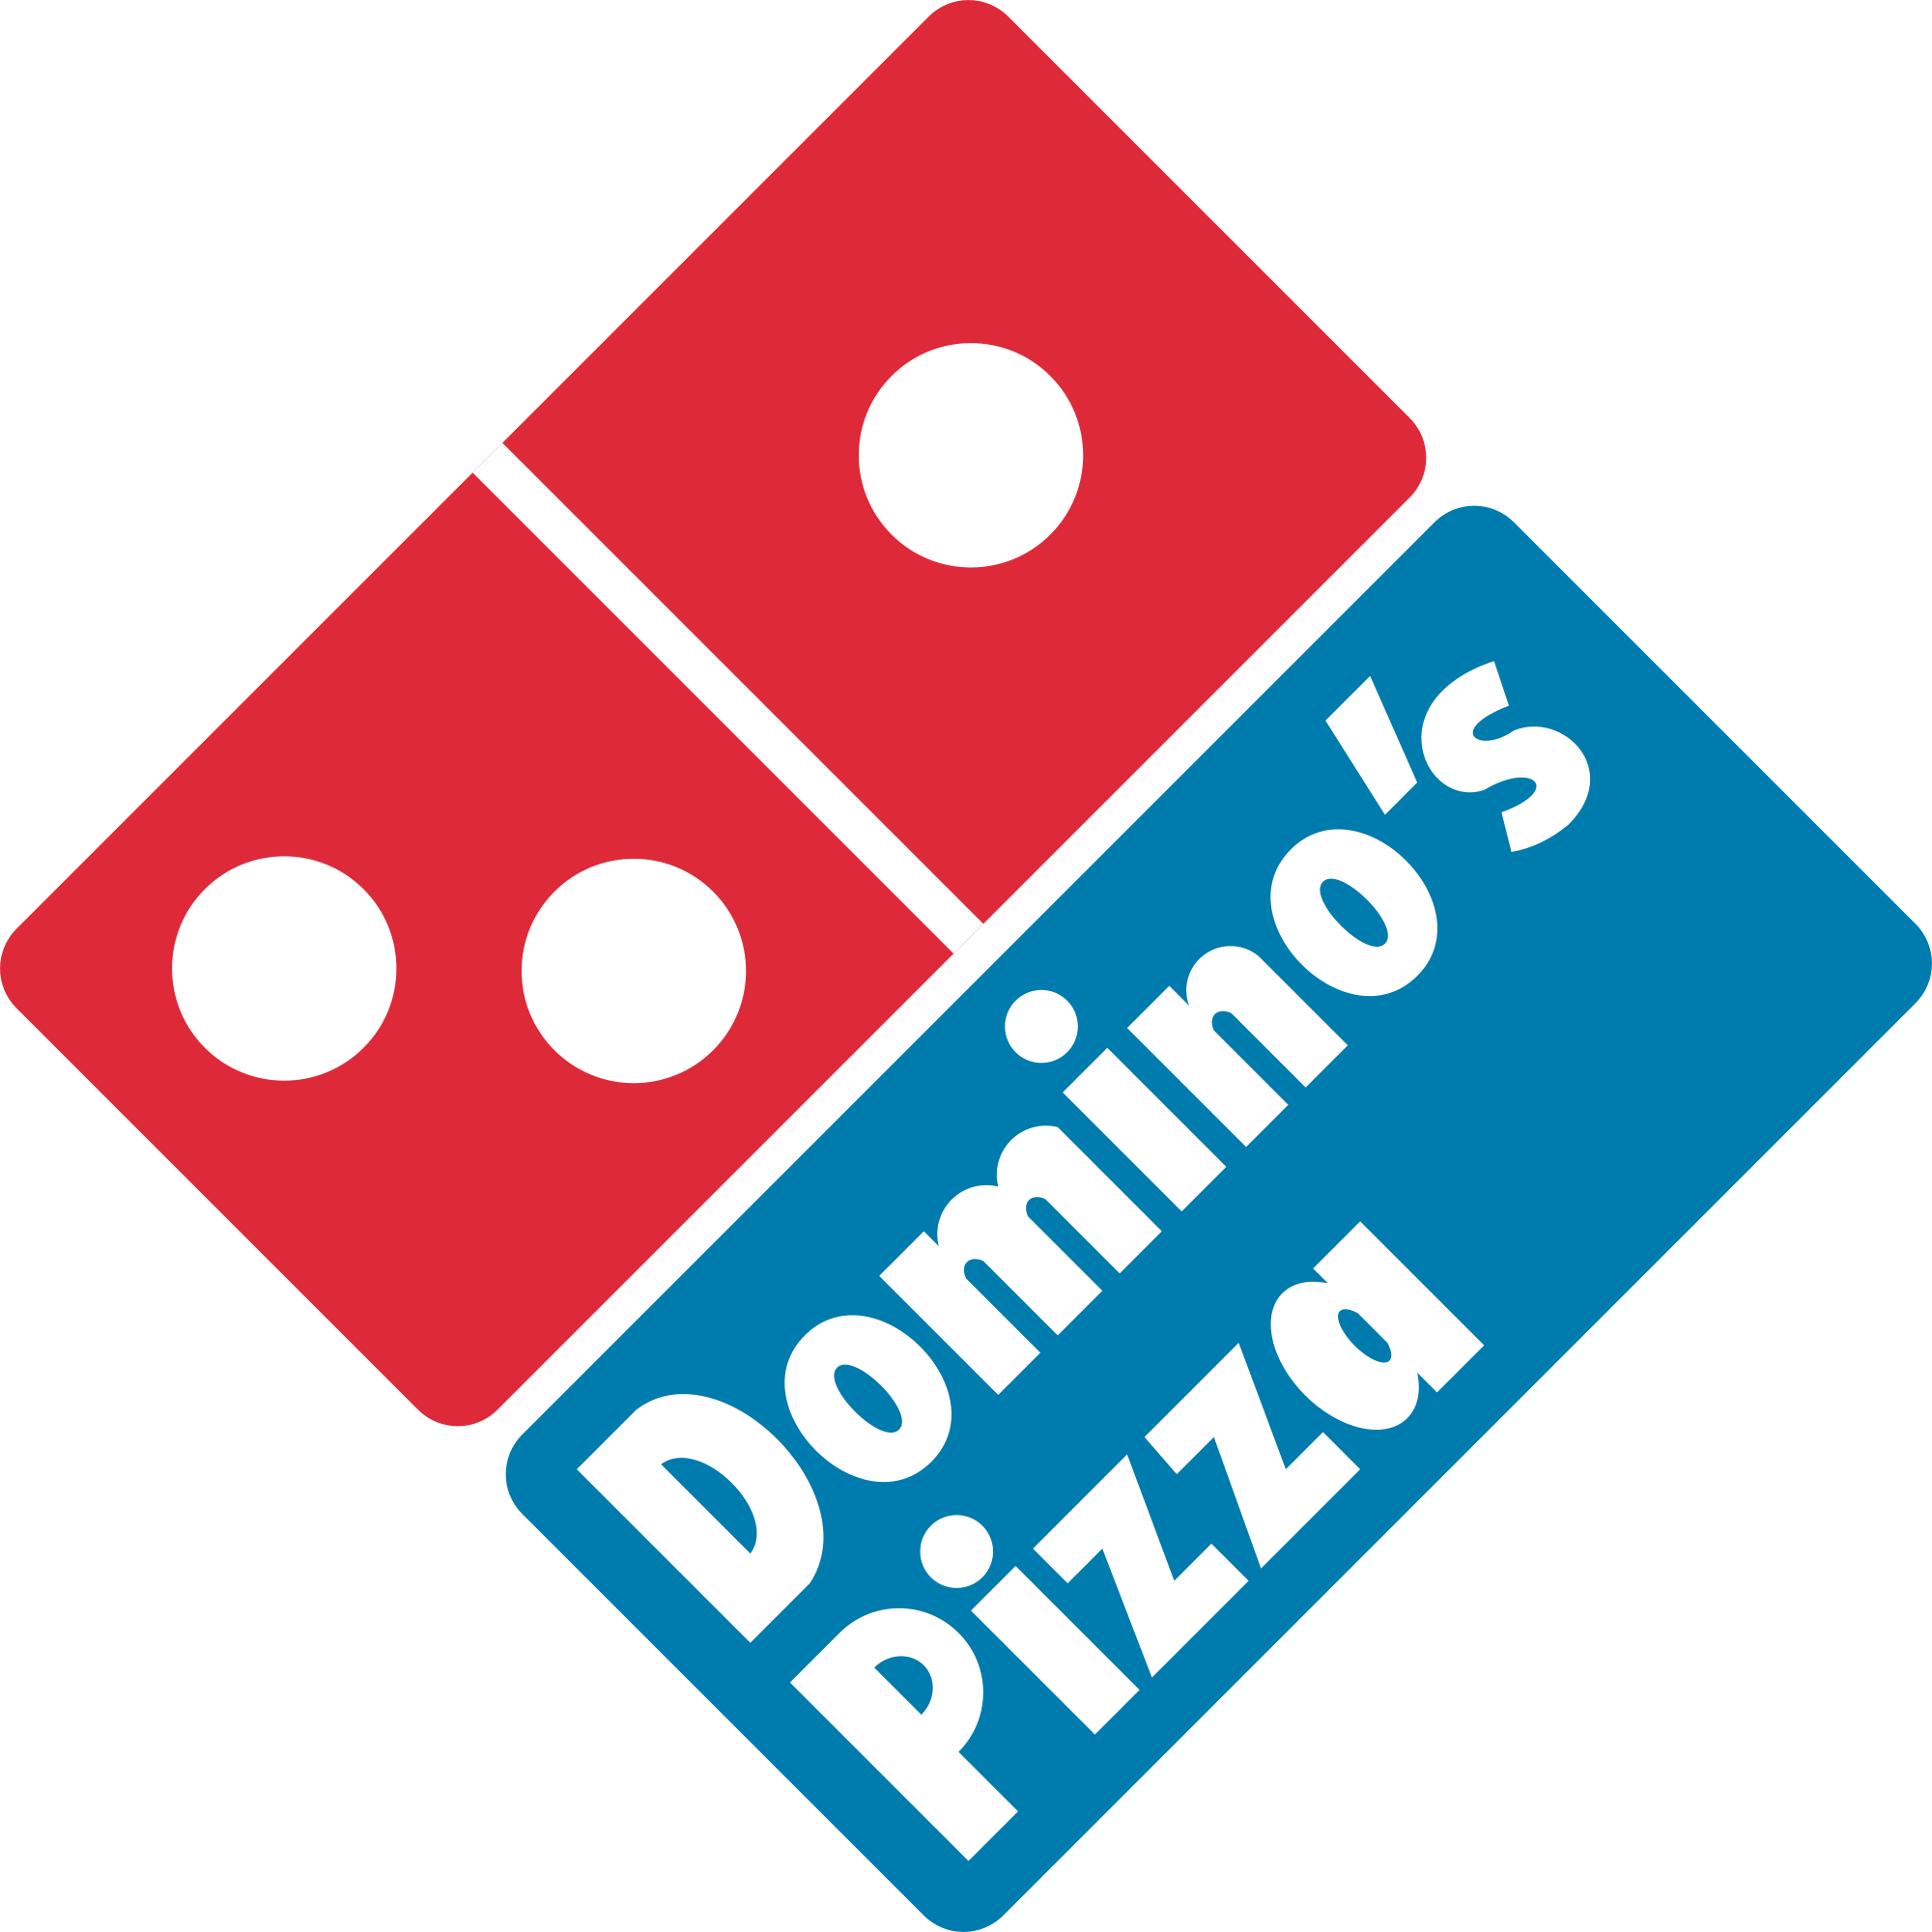 好嗨哟，Domino's Pizza全场5折又来啦！外卖可以到付哦！真的嗨！